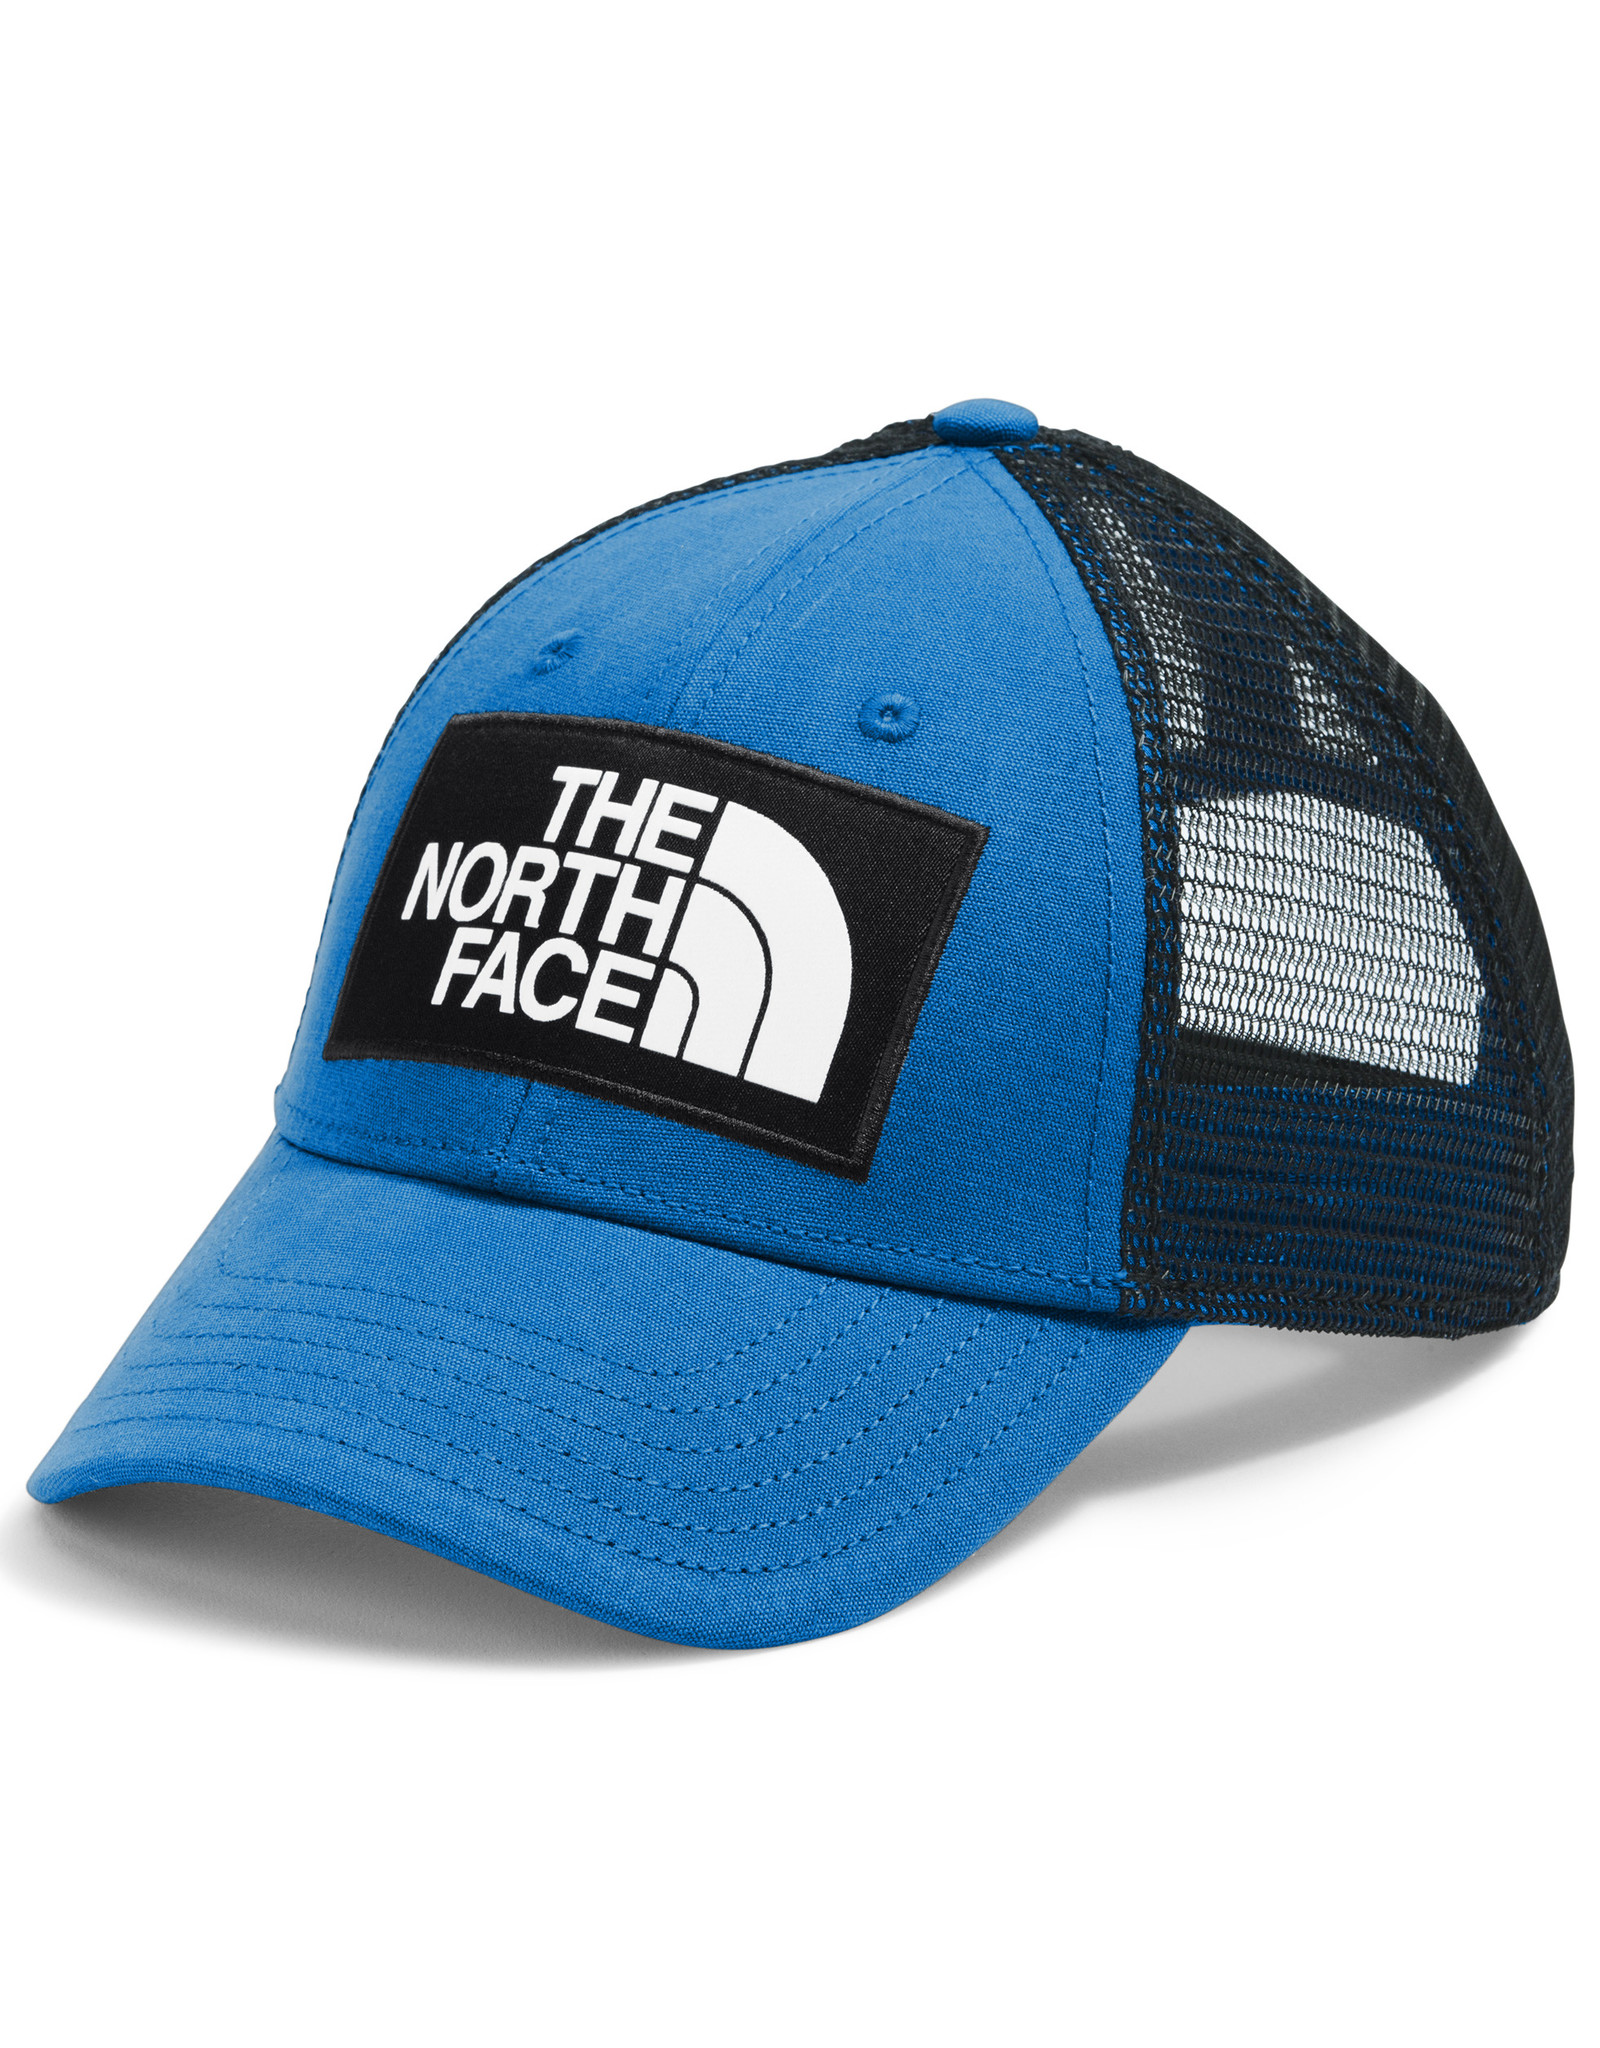 mudder trucker hat north face